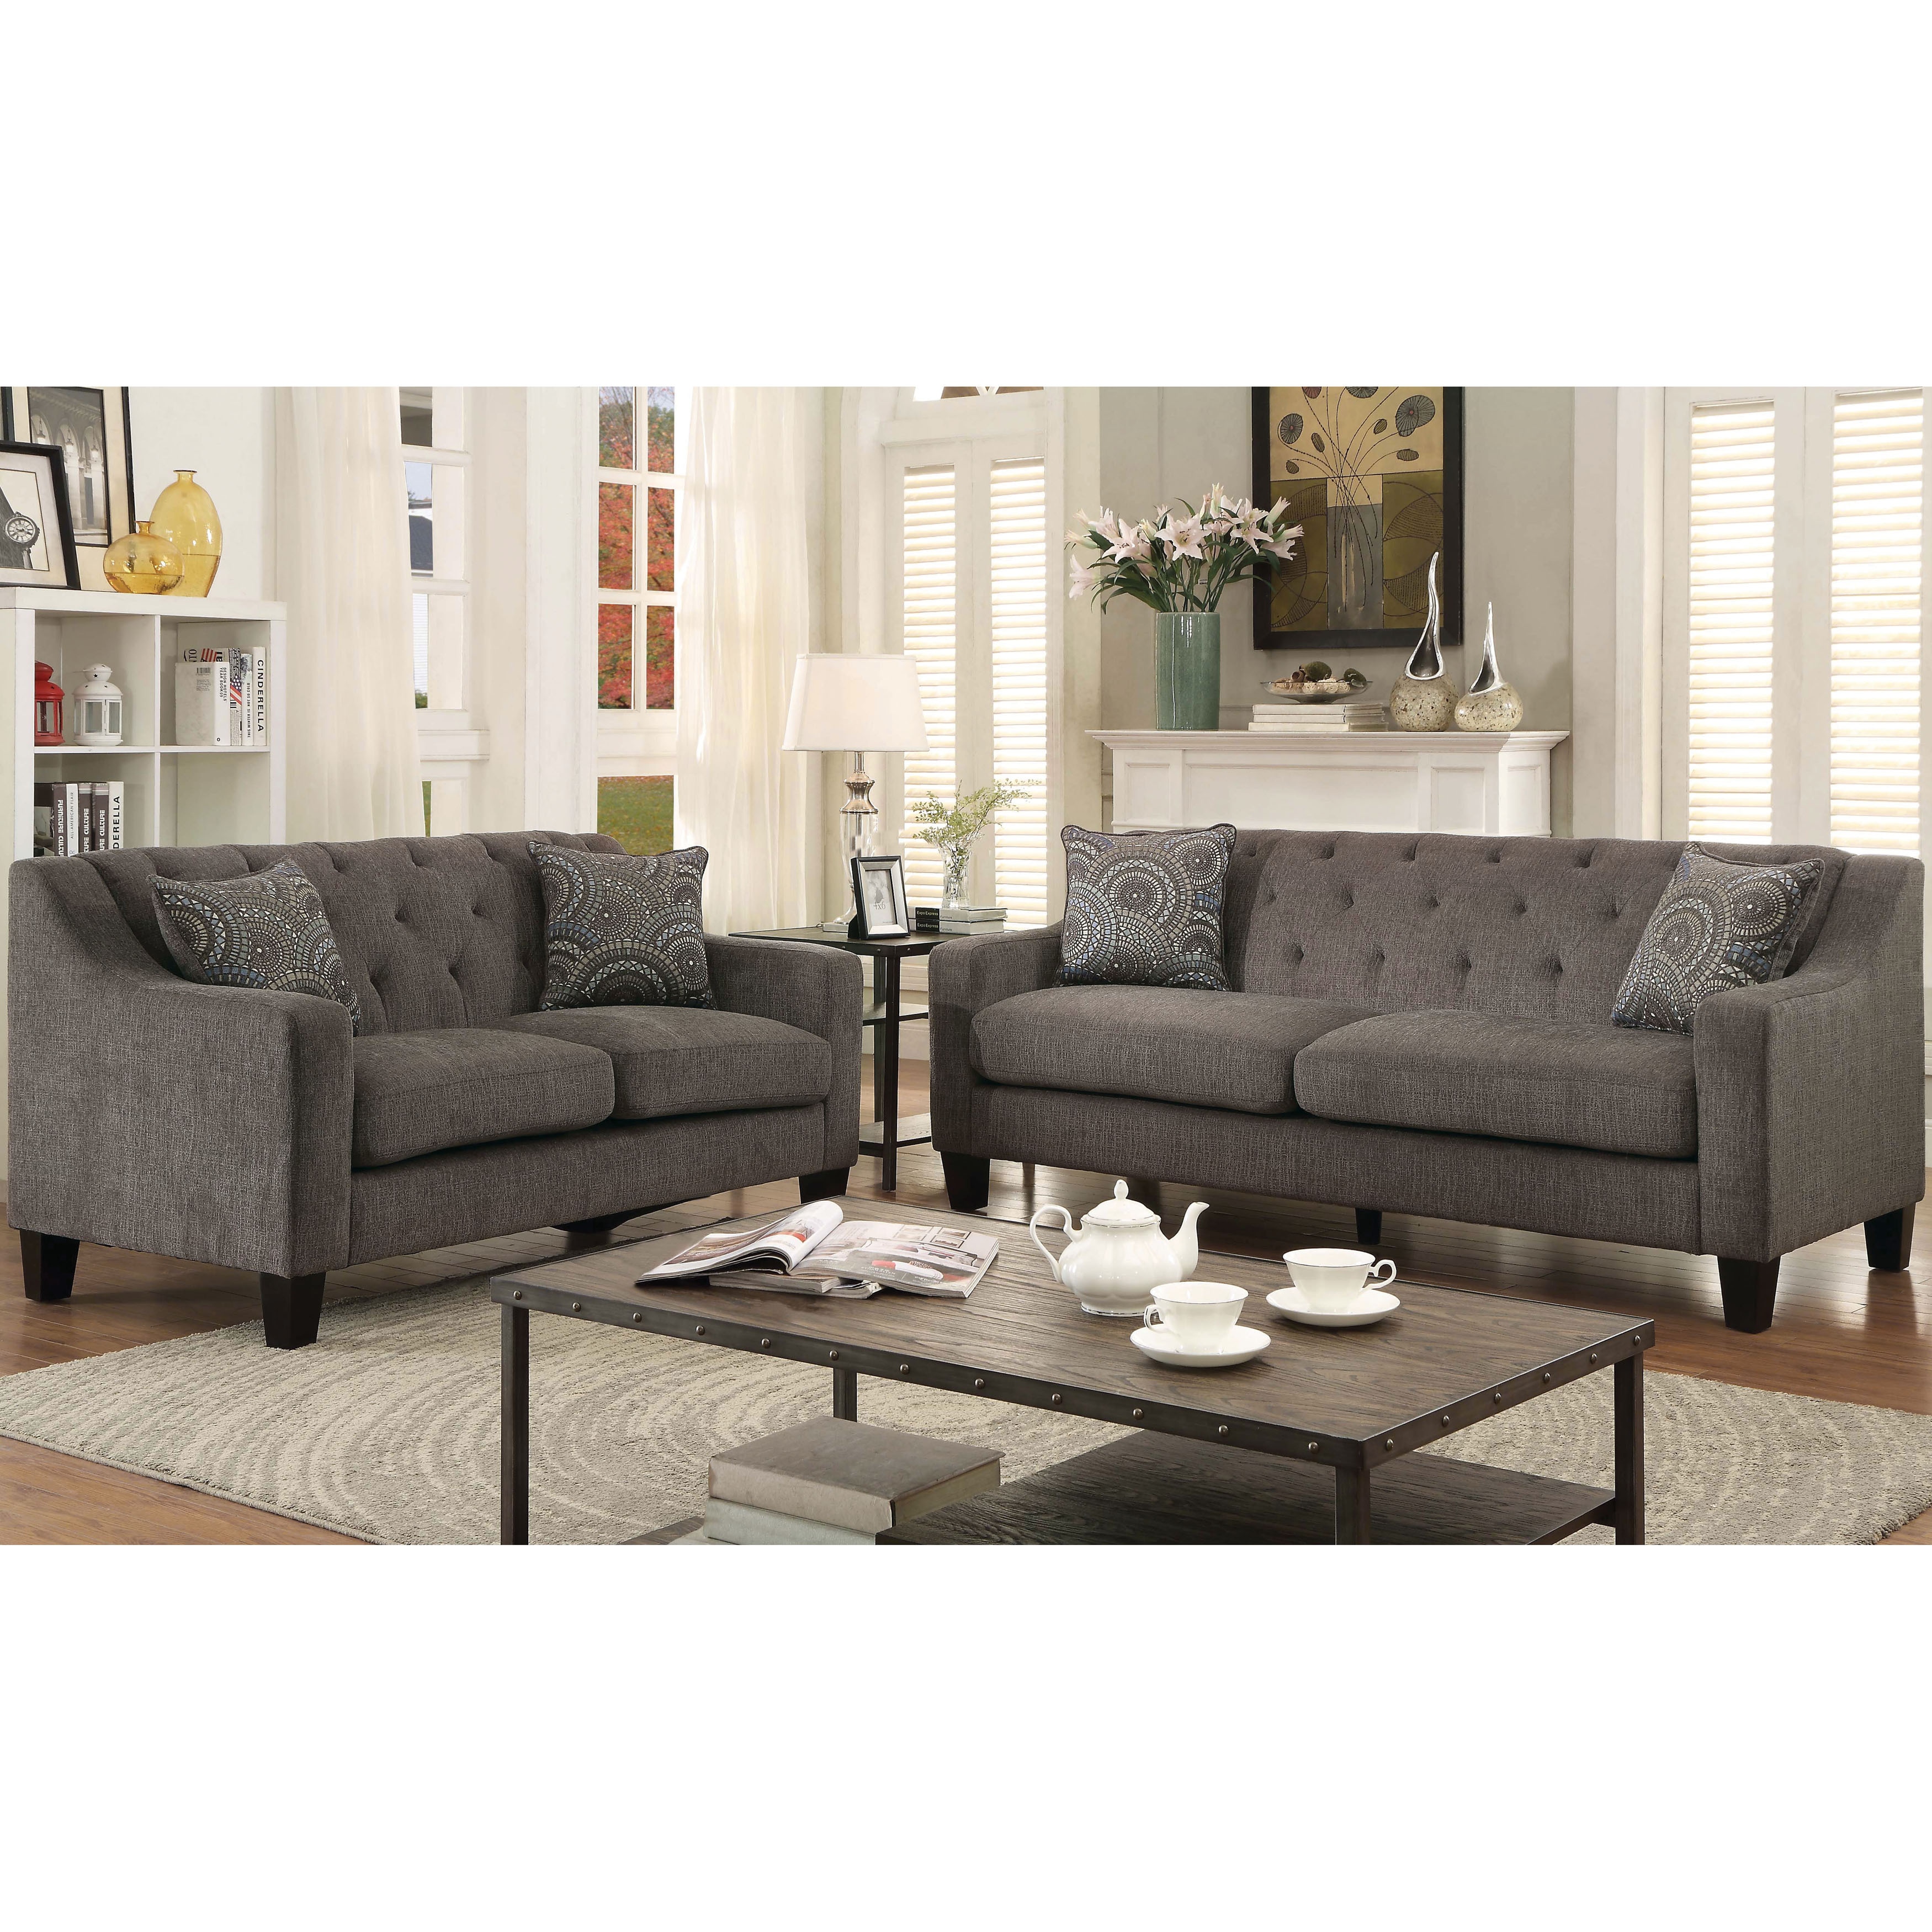 Furniture Of America Fiva Contemporary Mocha Chenille 3 Piece Sofa Set Overstock 10539048